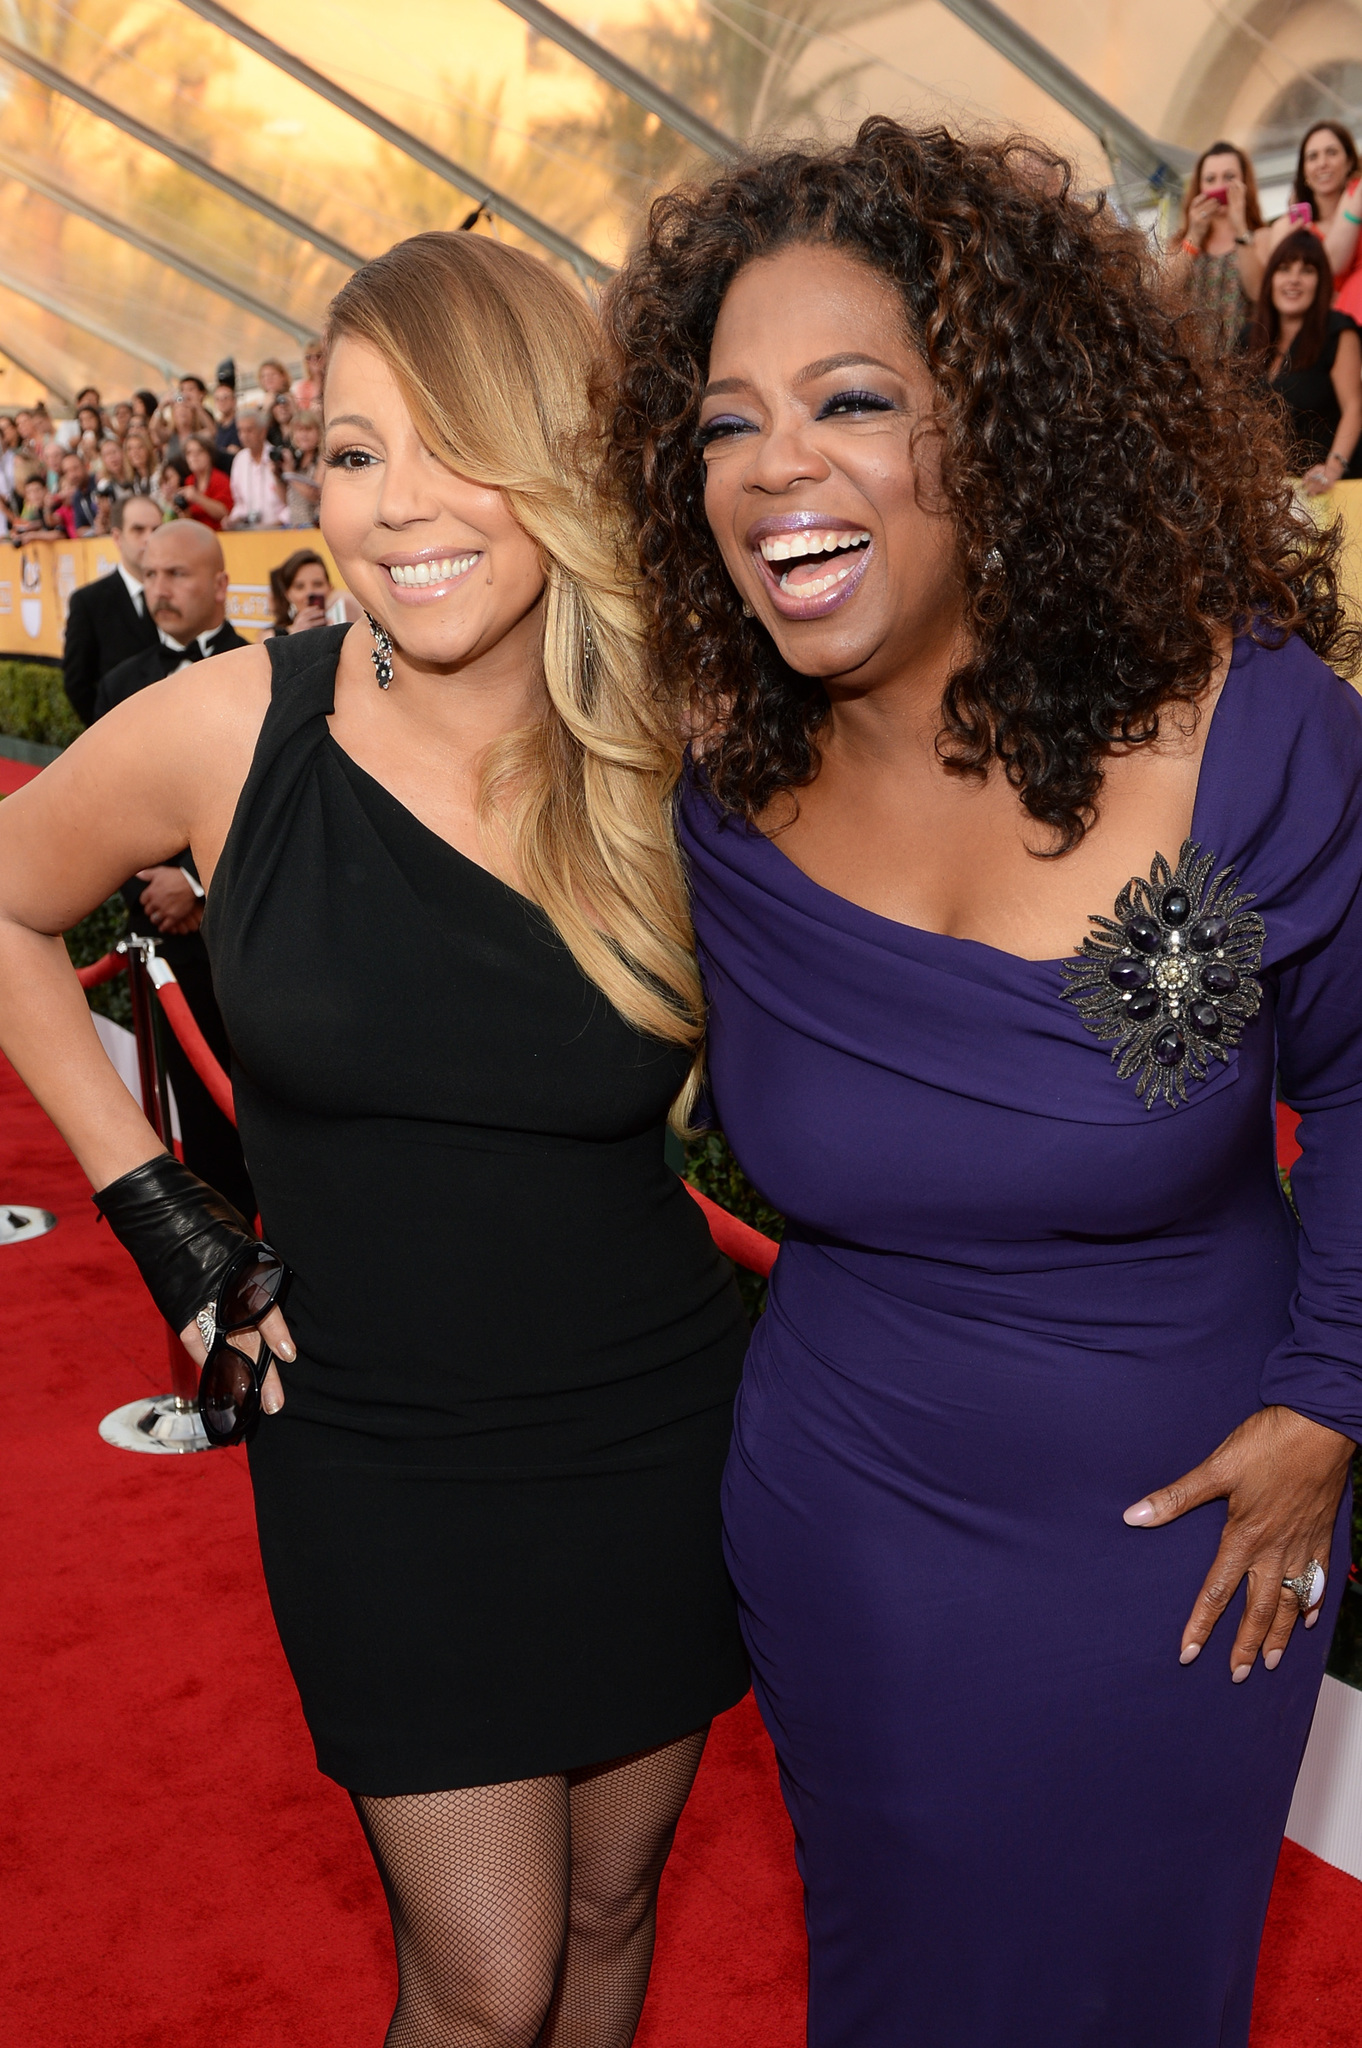 Mariah Carey and Oprah Winfrey